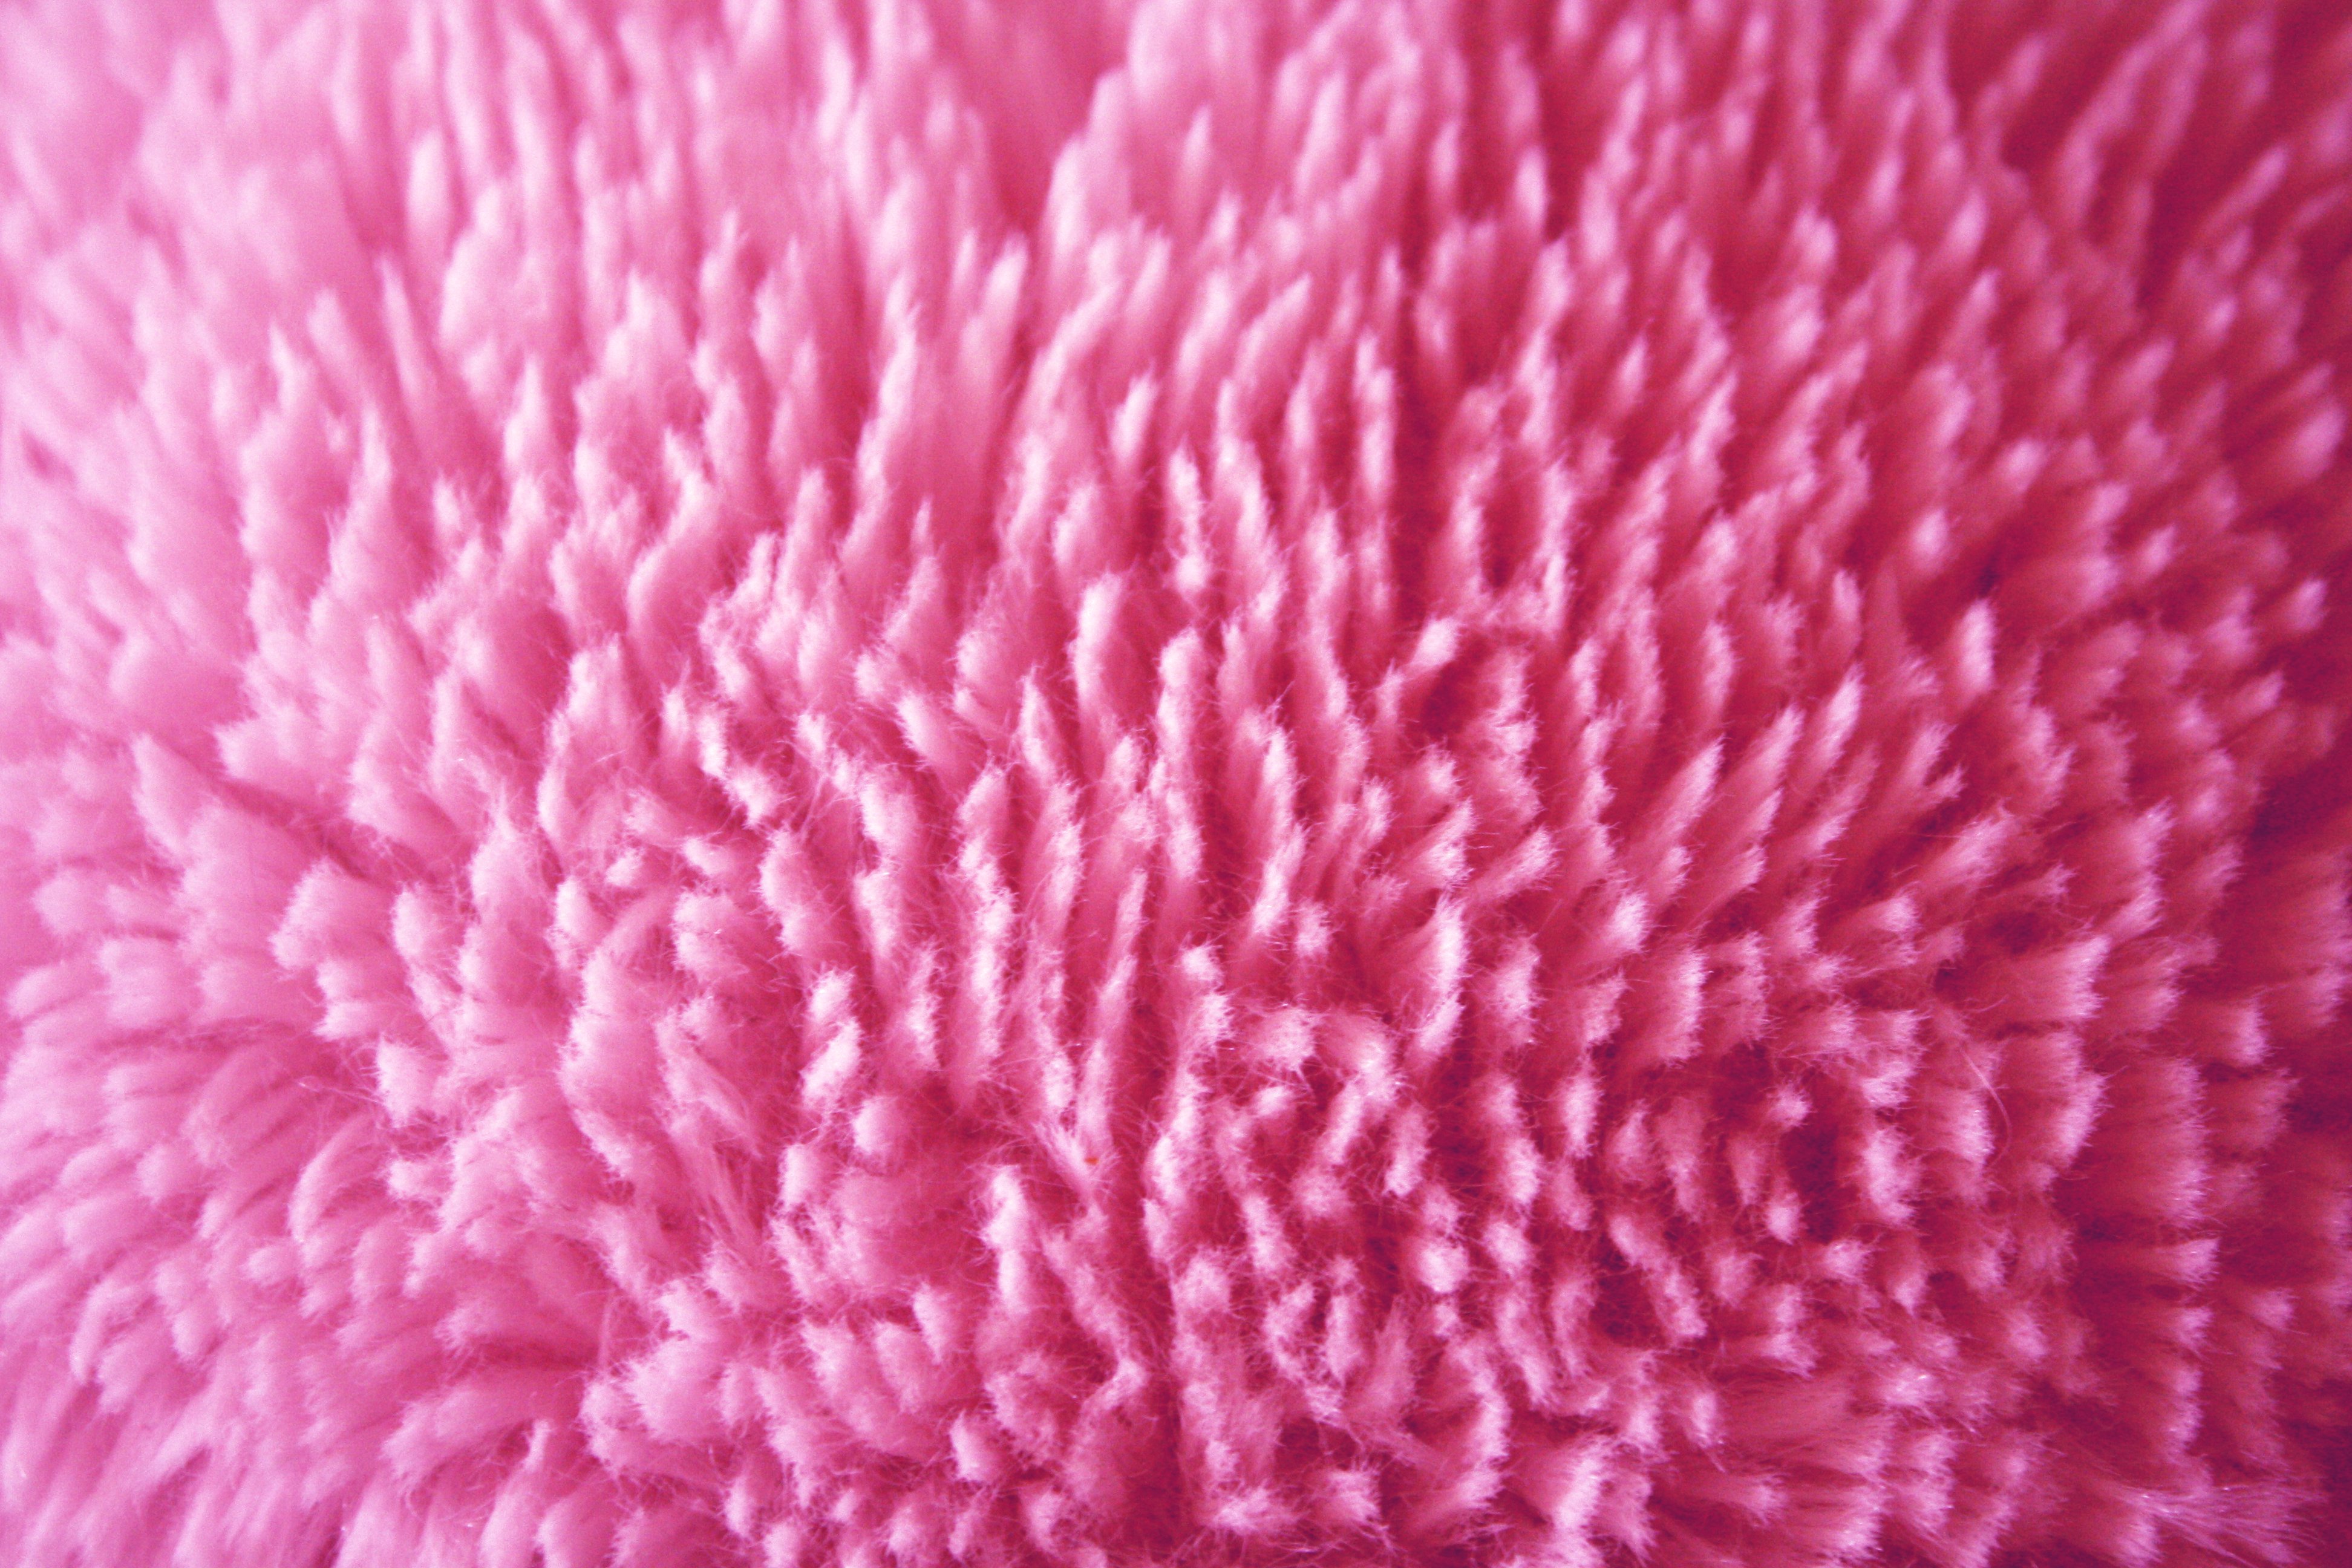 Plush Pink Fabric Texture Picture Photograph Photos Public